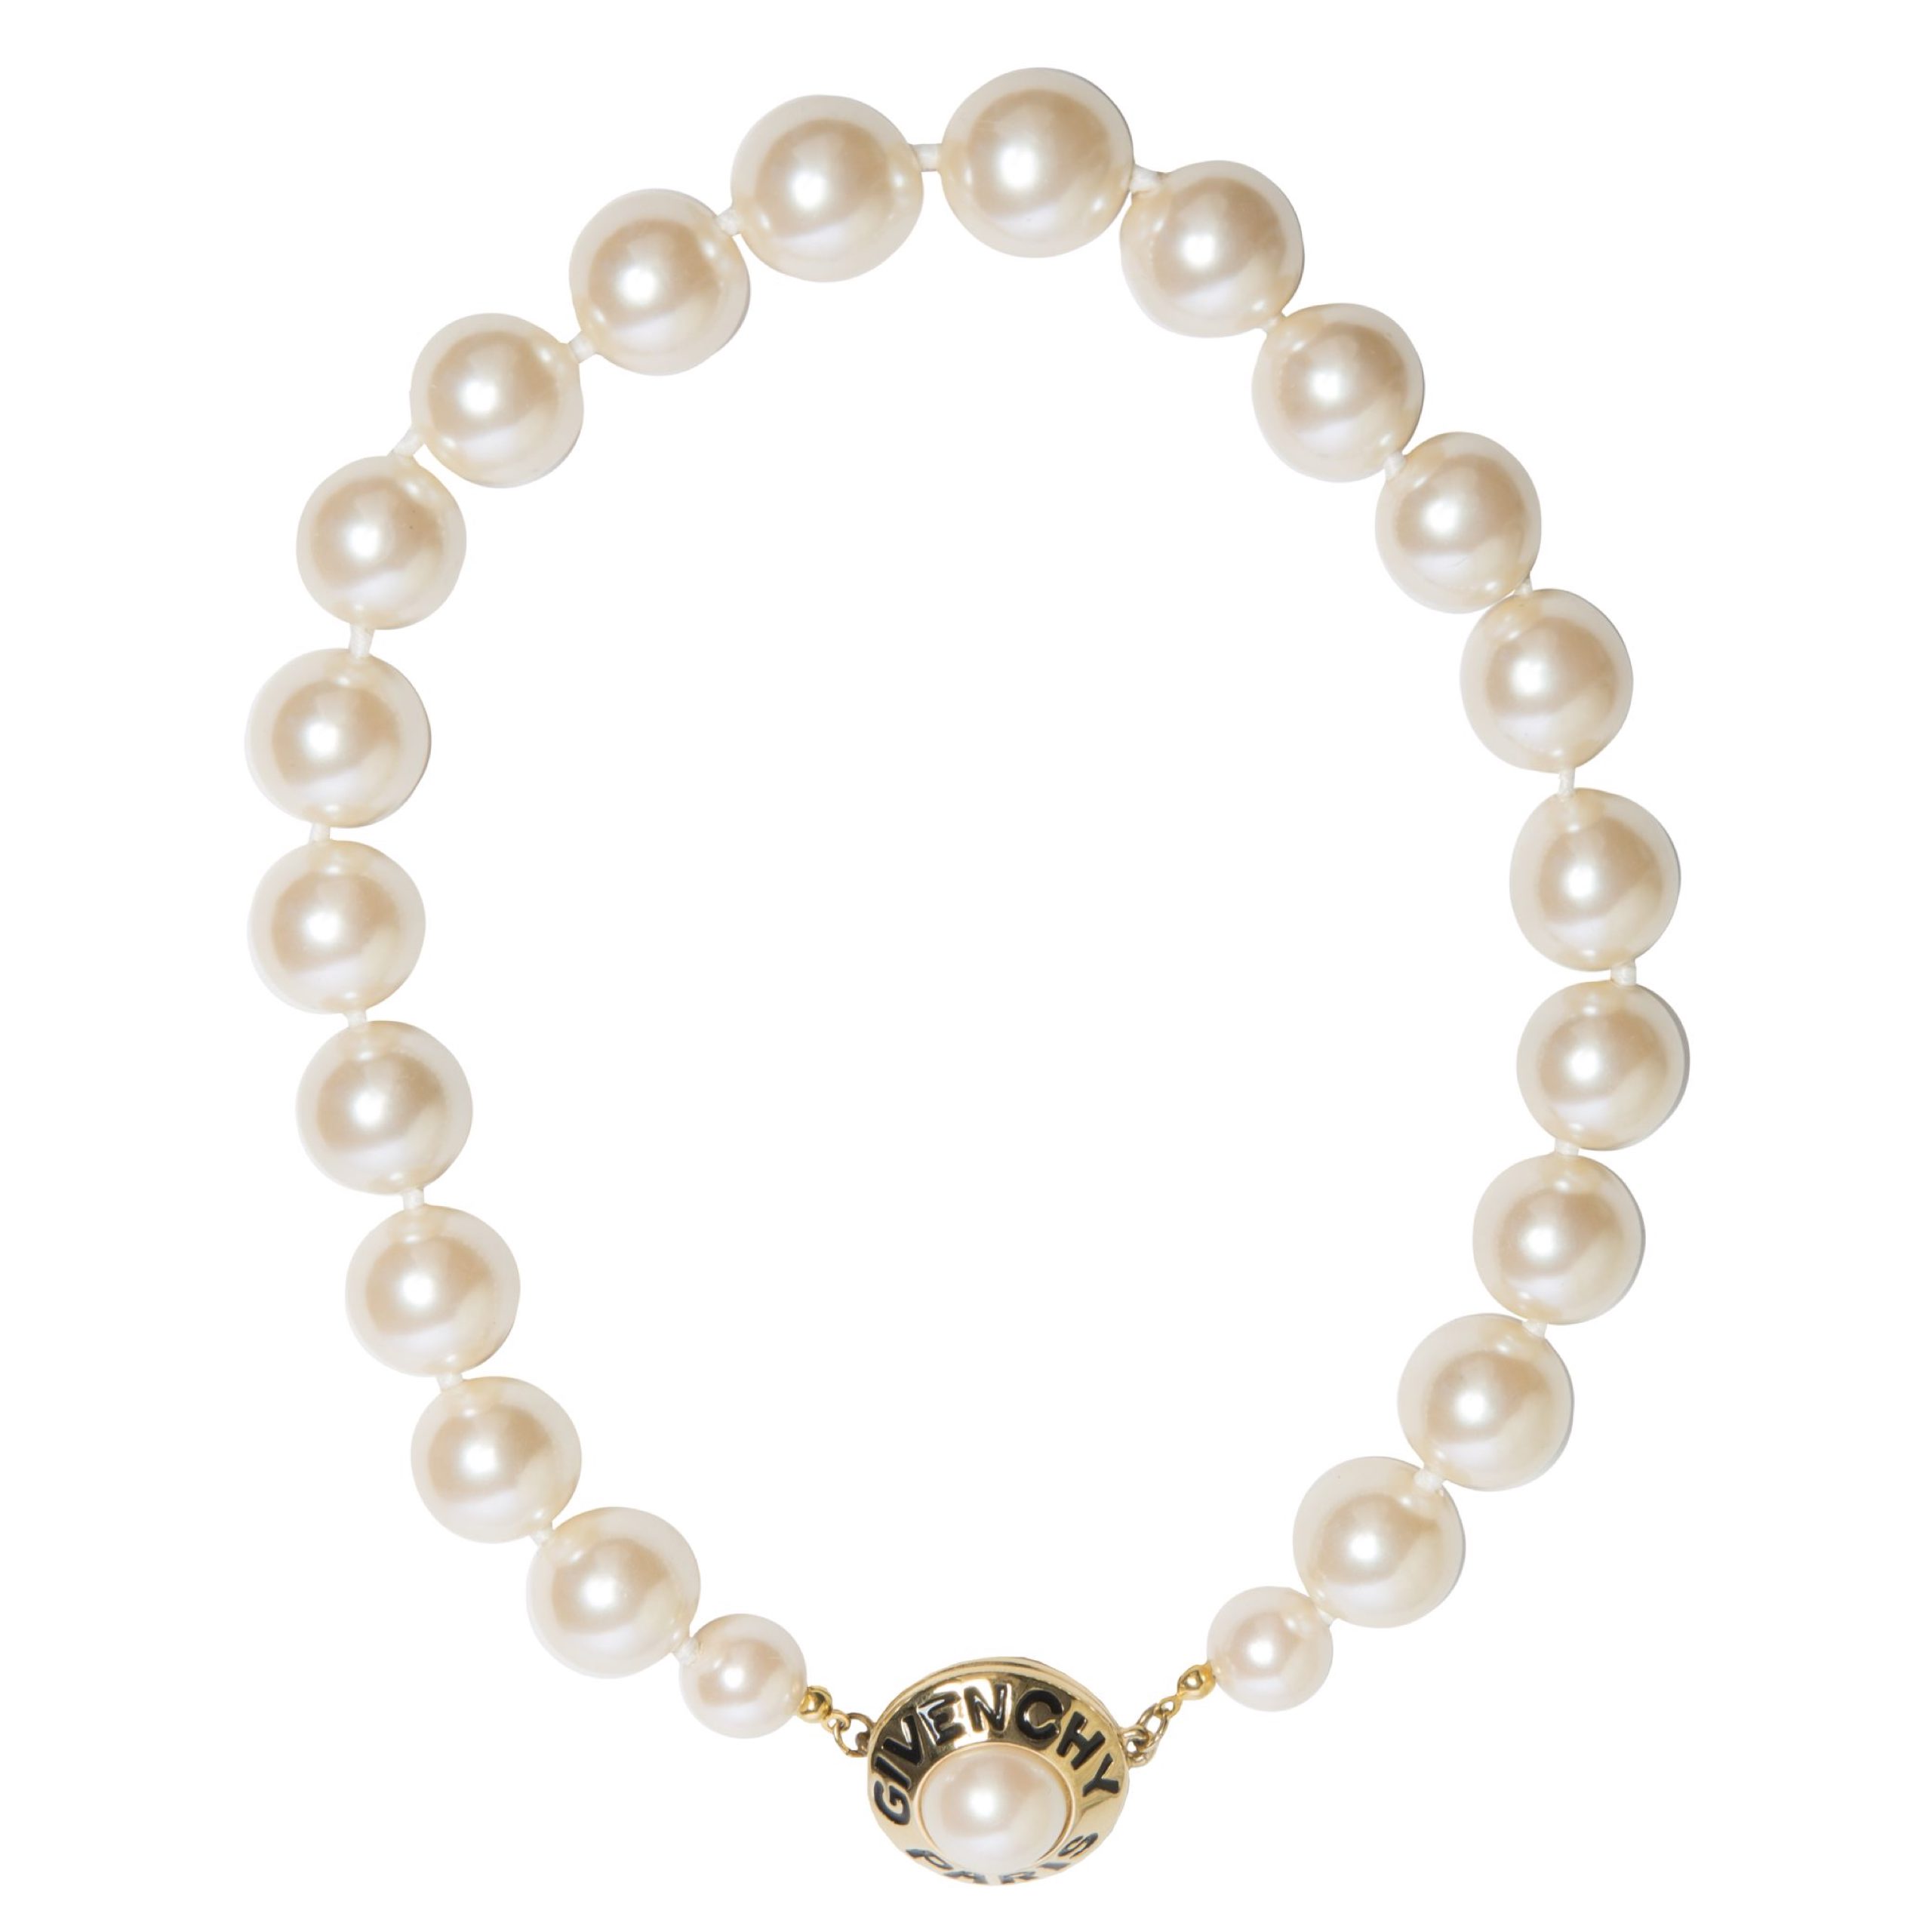 Vintage logo closure pearl necklace